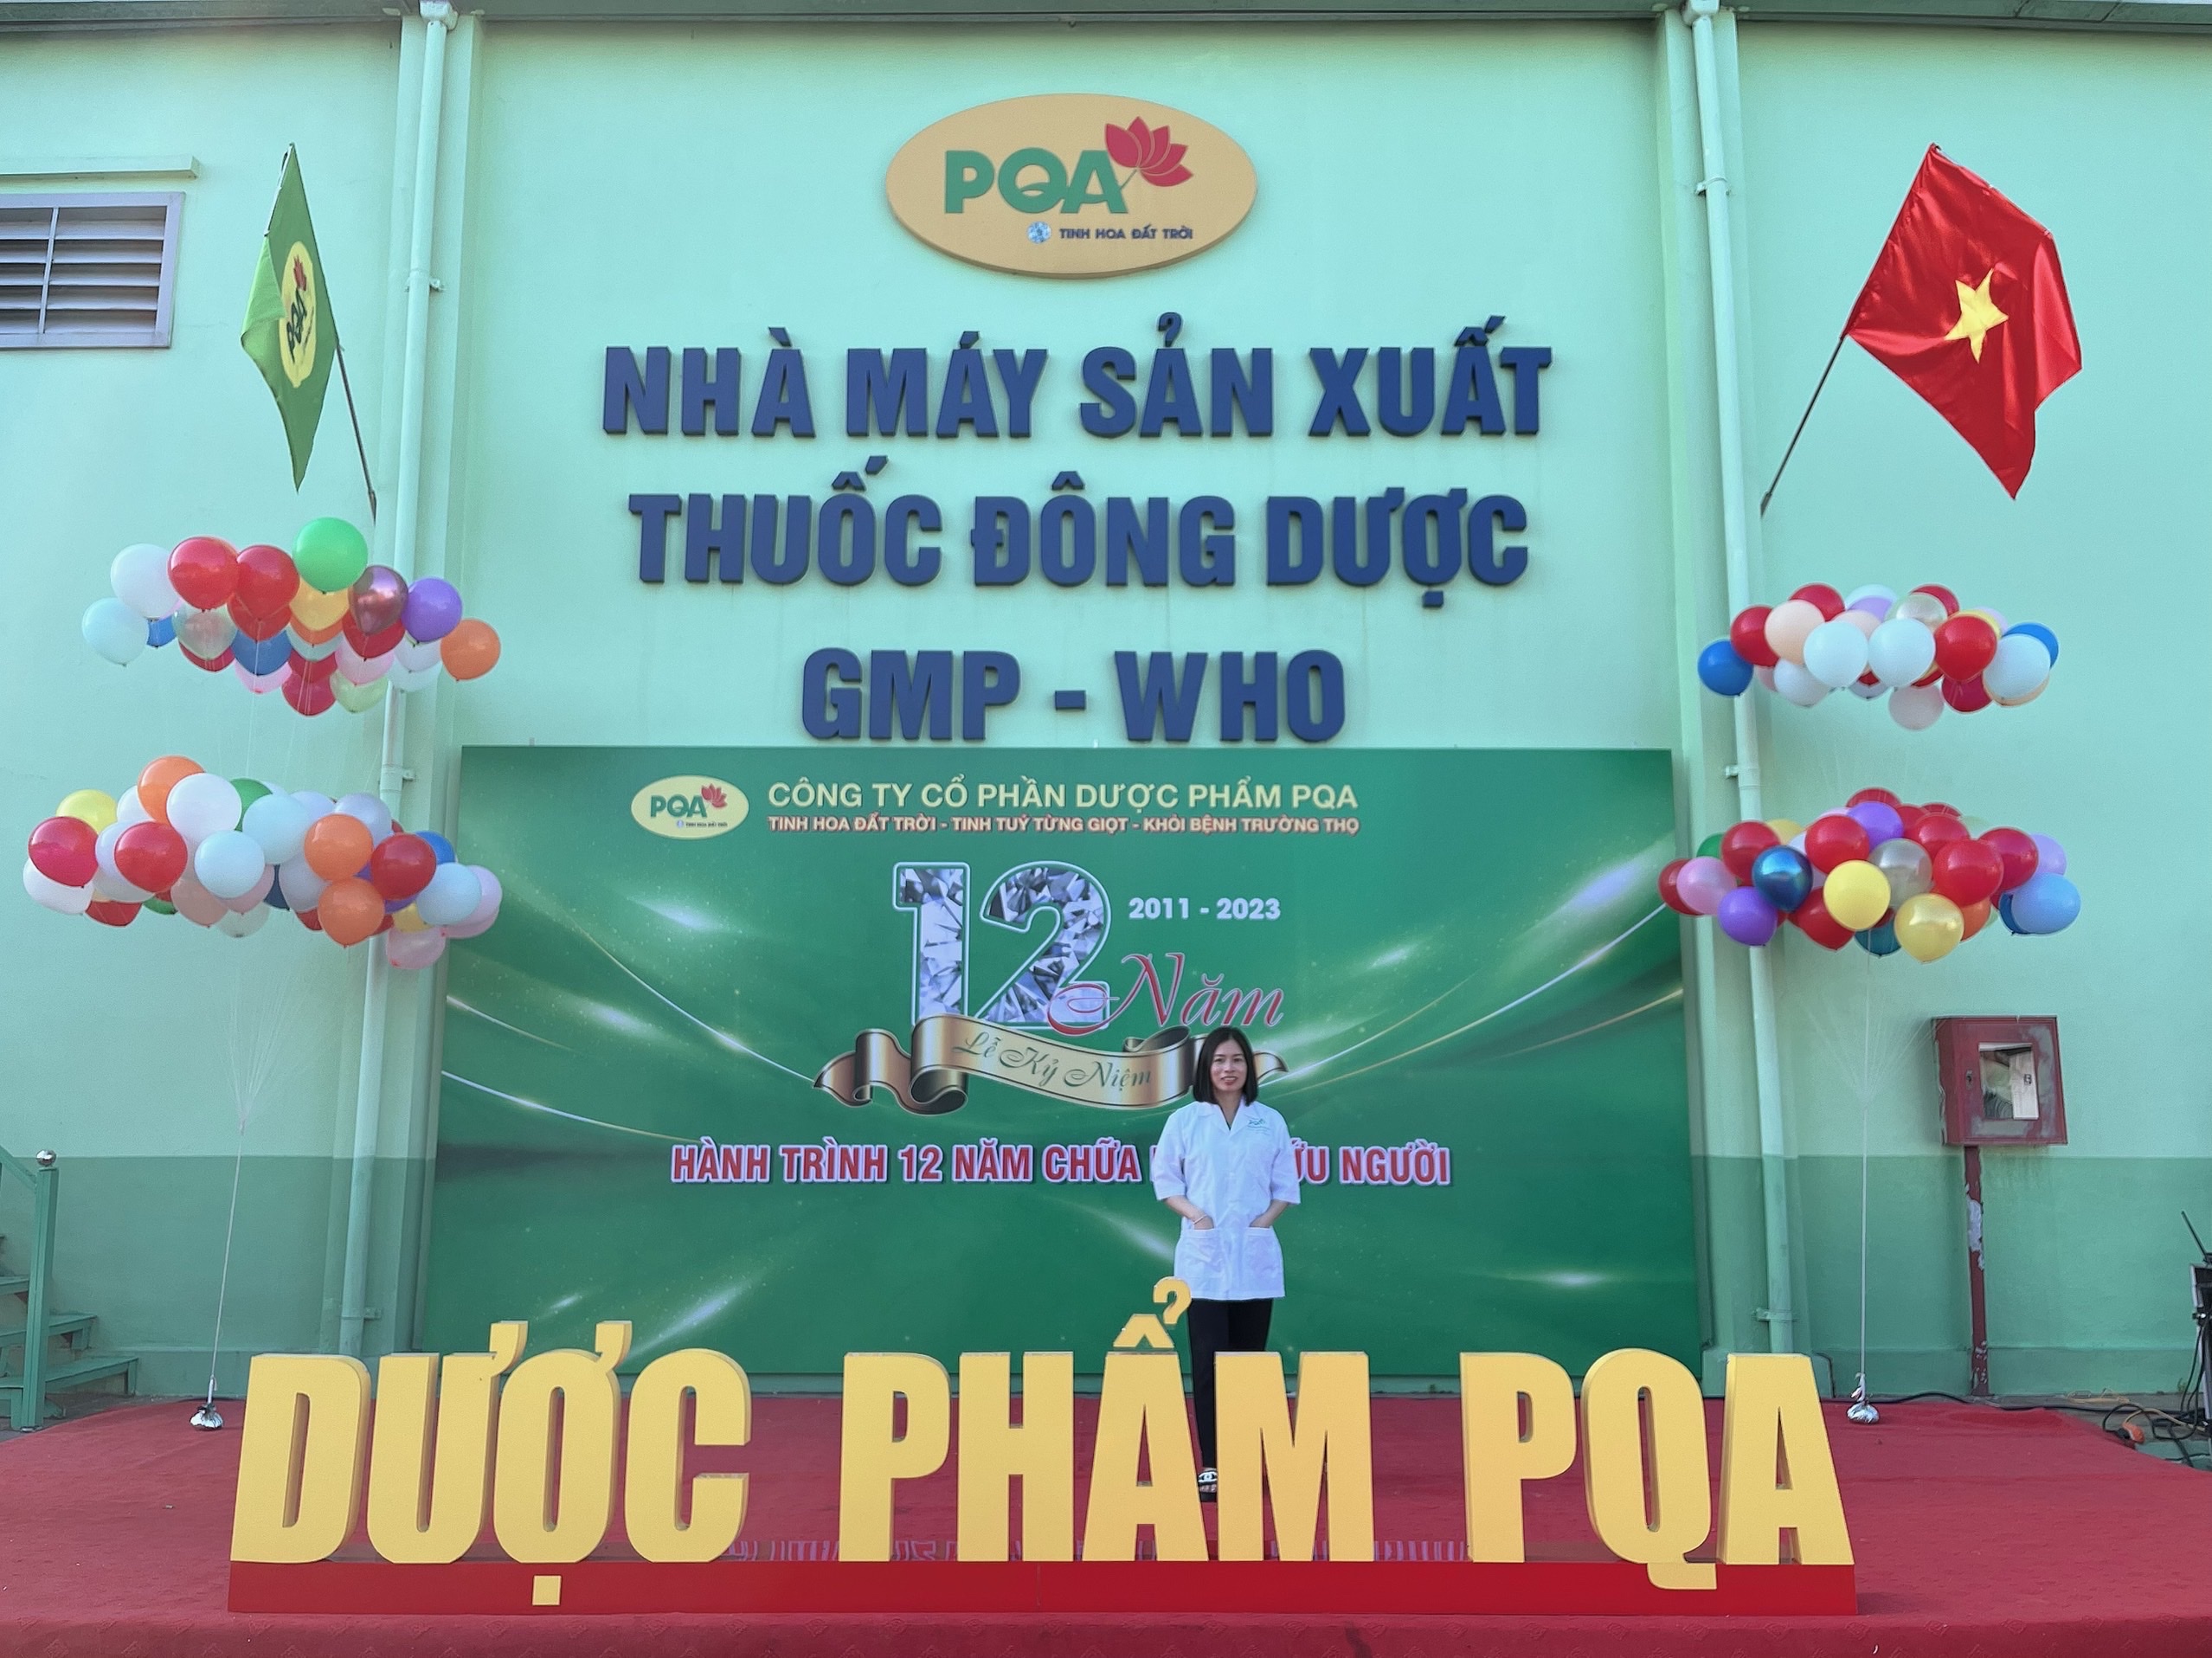 DS Ysyhct Nguyễn Thắm